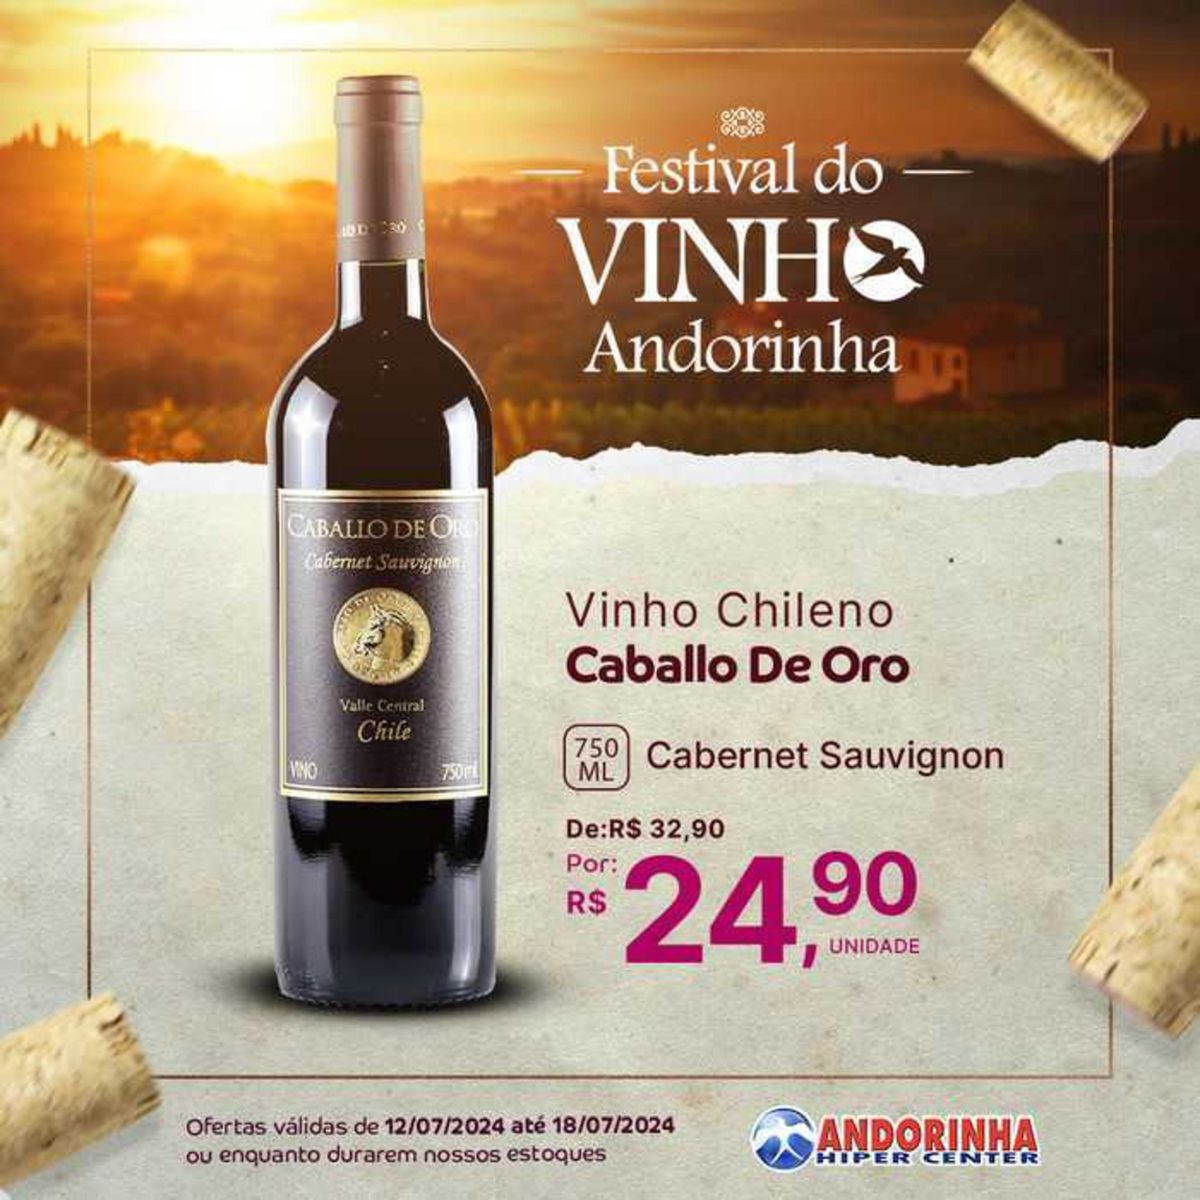 Vinho Chileno Caballo De Oro 750ml Cabernet Sauvignon